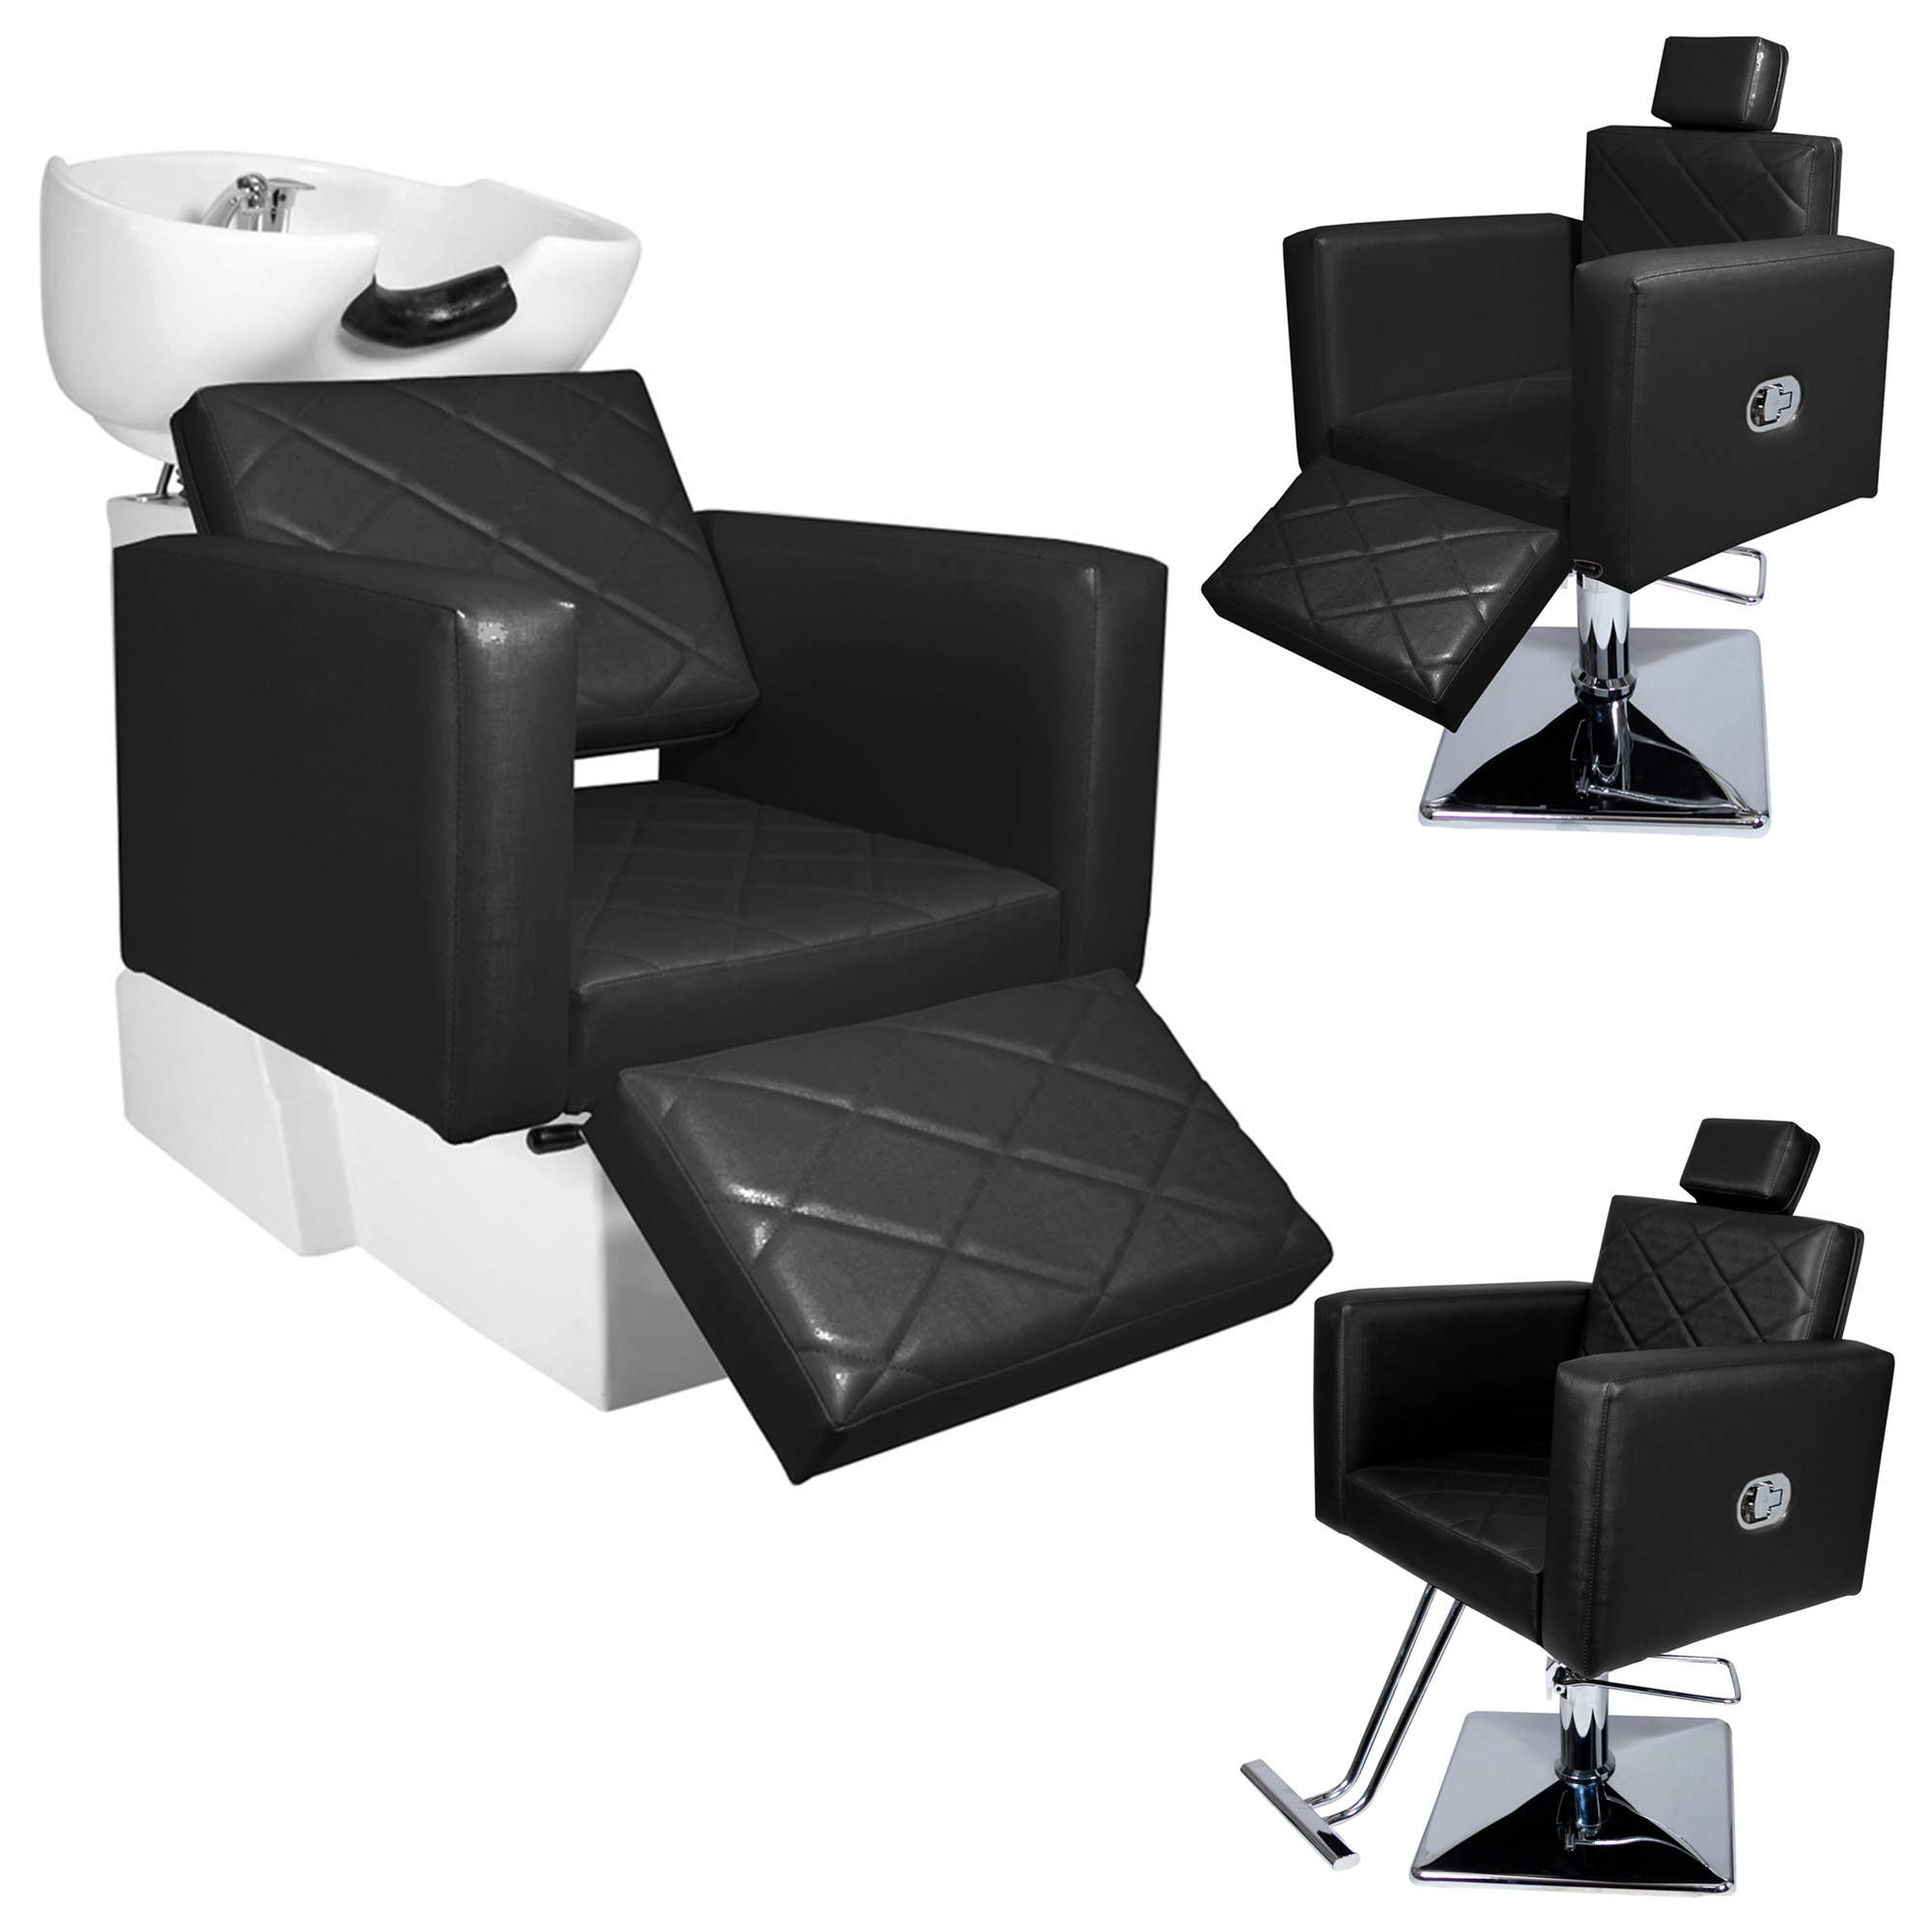 KIT Evidence - Cadeira Reclinável + Cadeira Reclinável Descanso + Lavatório Descanso - Base Quadrada - Foto 0